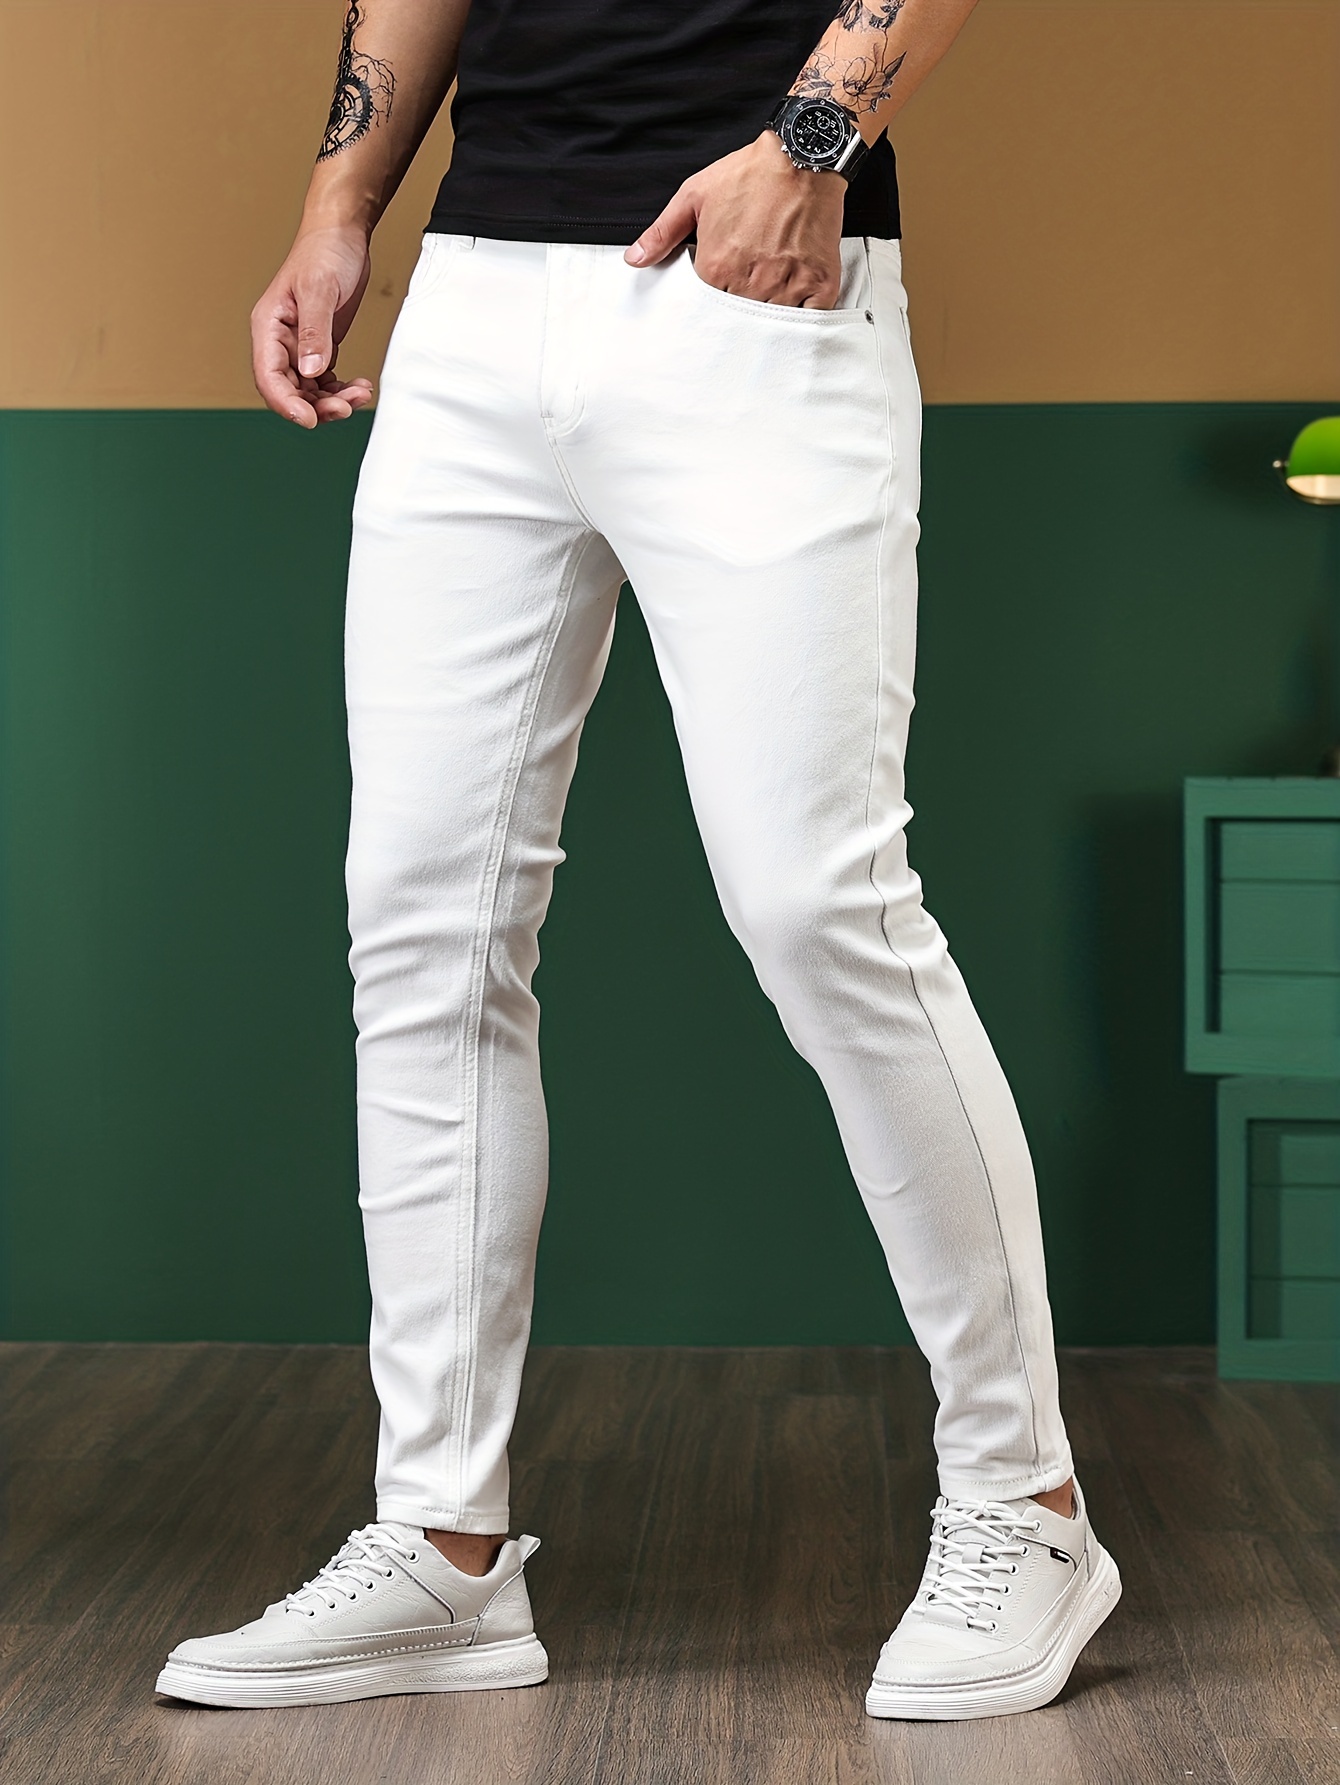 Pantalon blanc taille élastique vendu sur